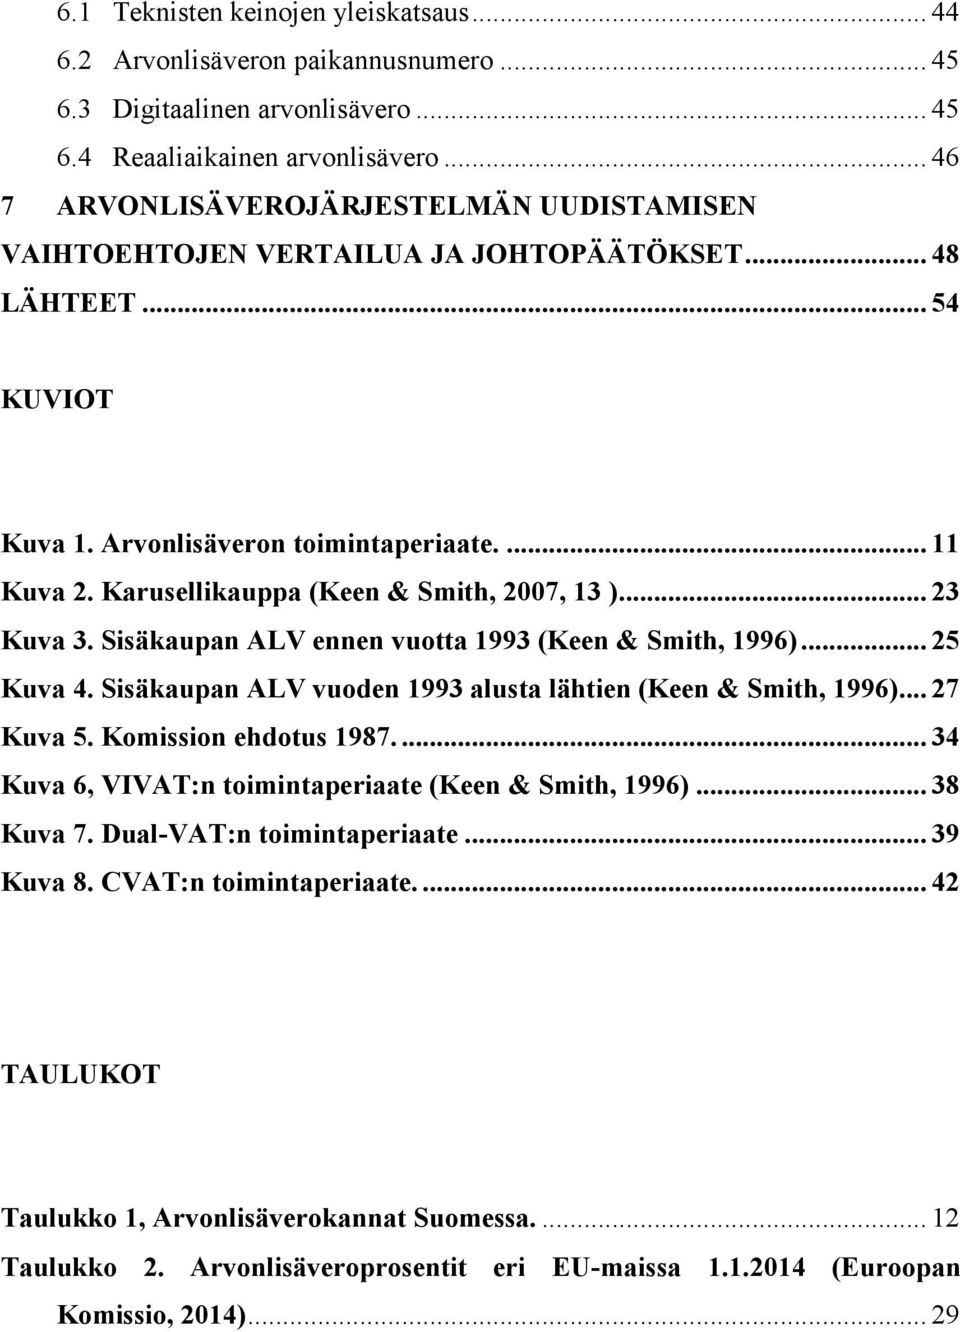 Karusellikauppa (Keen & Smith, 2007, 13 )... 23 Kuva 3. Sisäkaupan ALV ennen vuotta 1993 (Keen & Smith, 1996)... 25 Kuva 4. Sisäkaupan ALV vuoden 1993 alusta lähtien (Keen & Smith, 1996)... 27 Kuva 5.